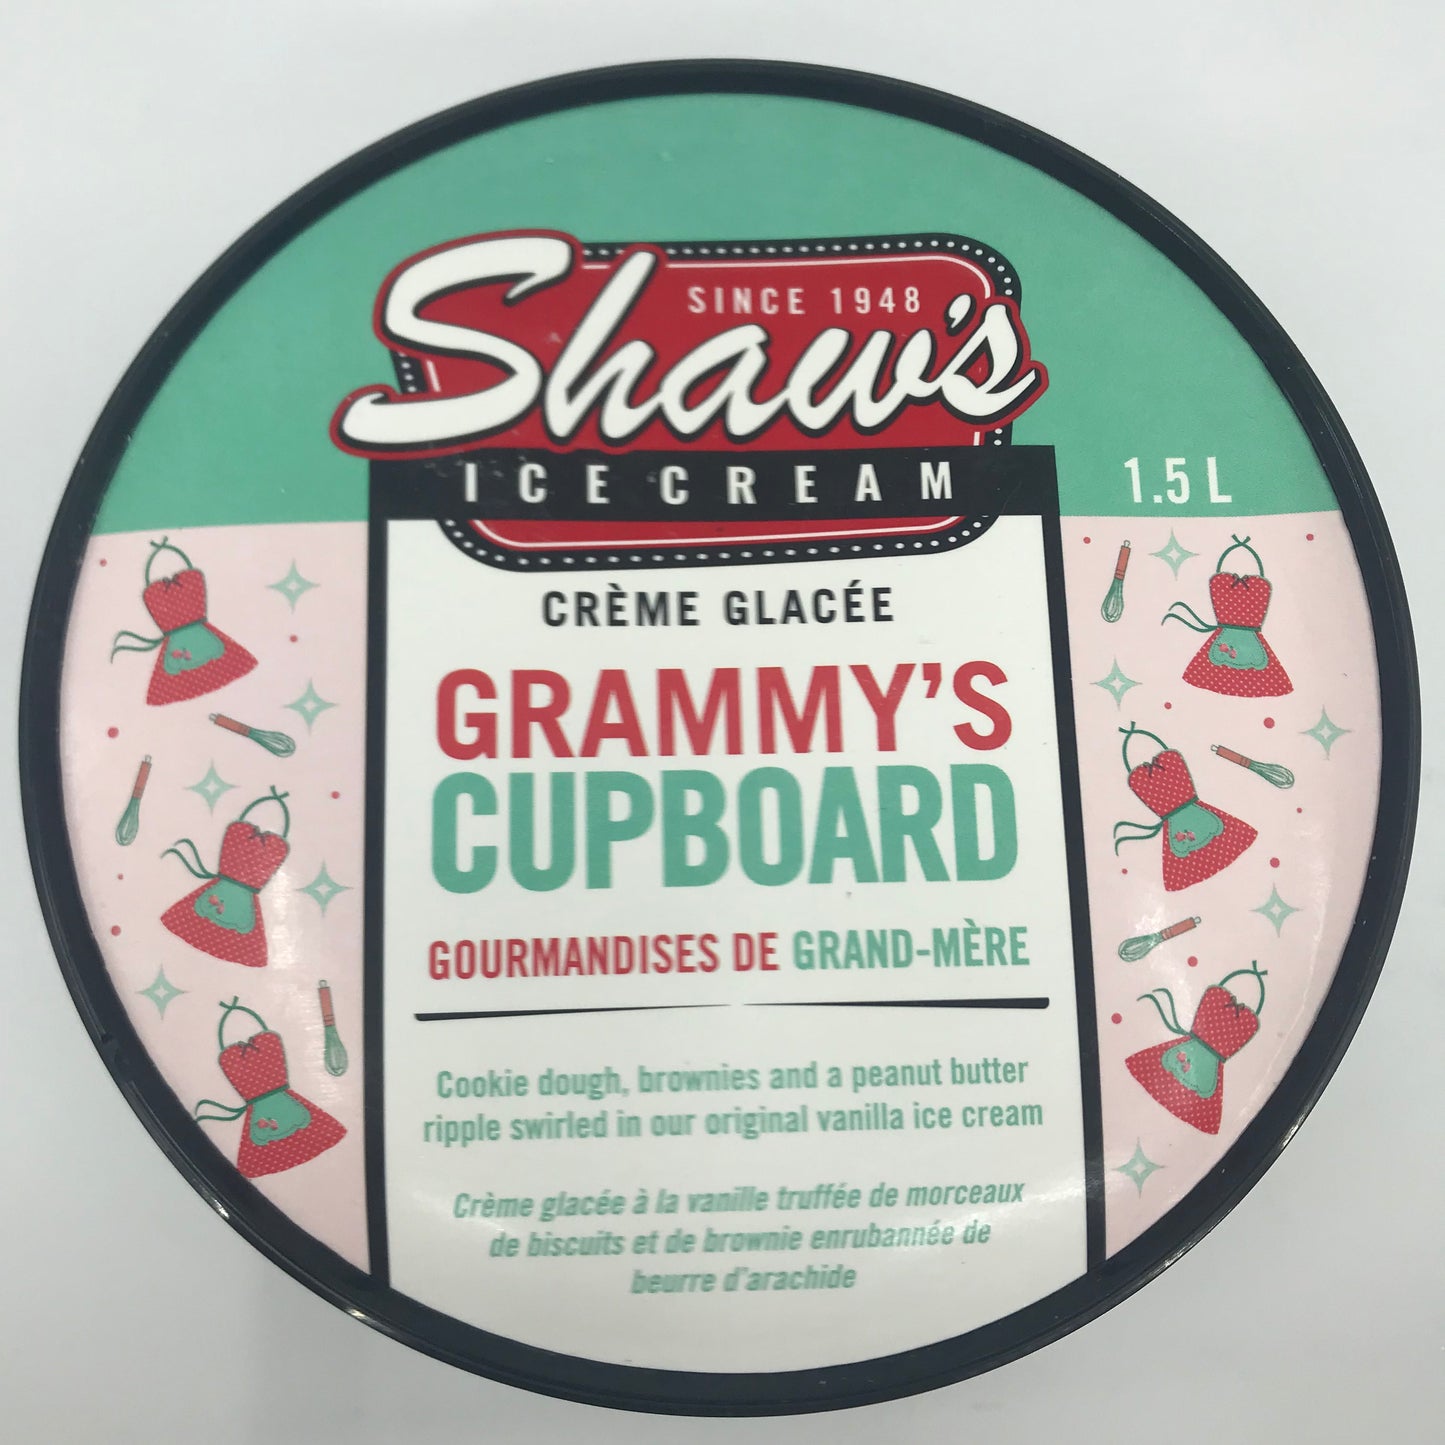 Grammys Cupboard Ice Cream 1.5l tub (Shaw)